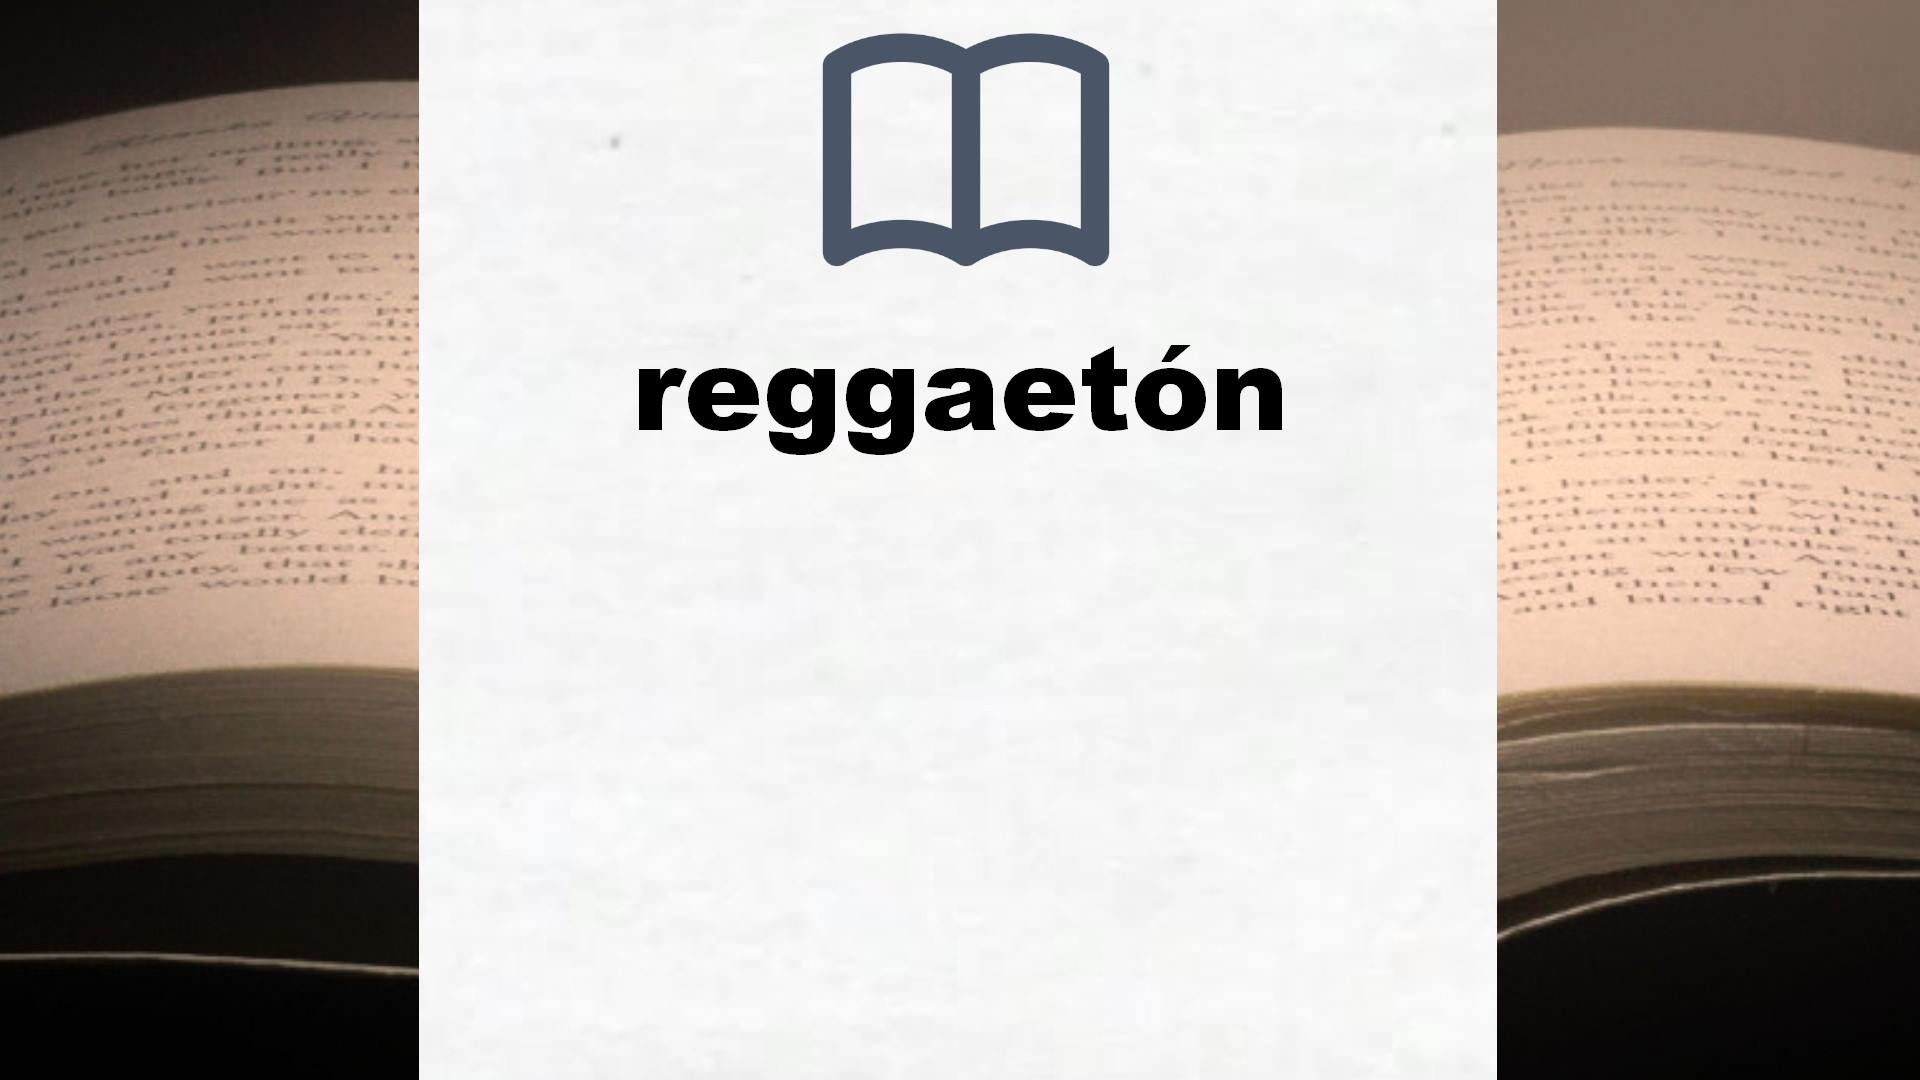 Libros sobre reggaetón